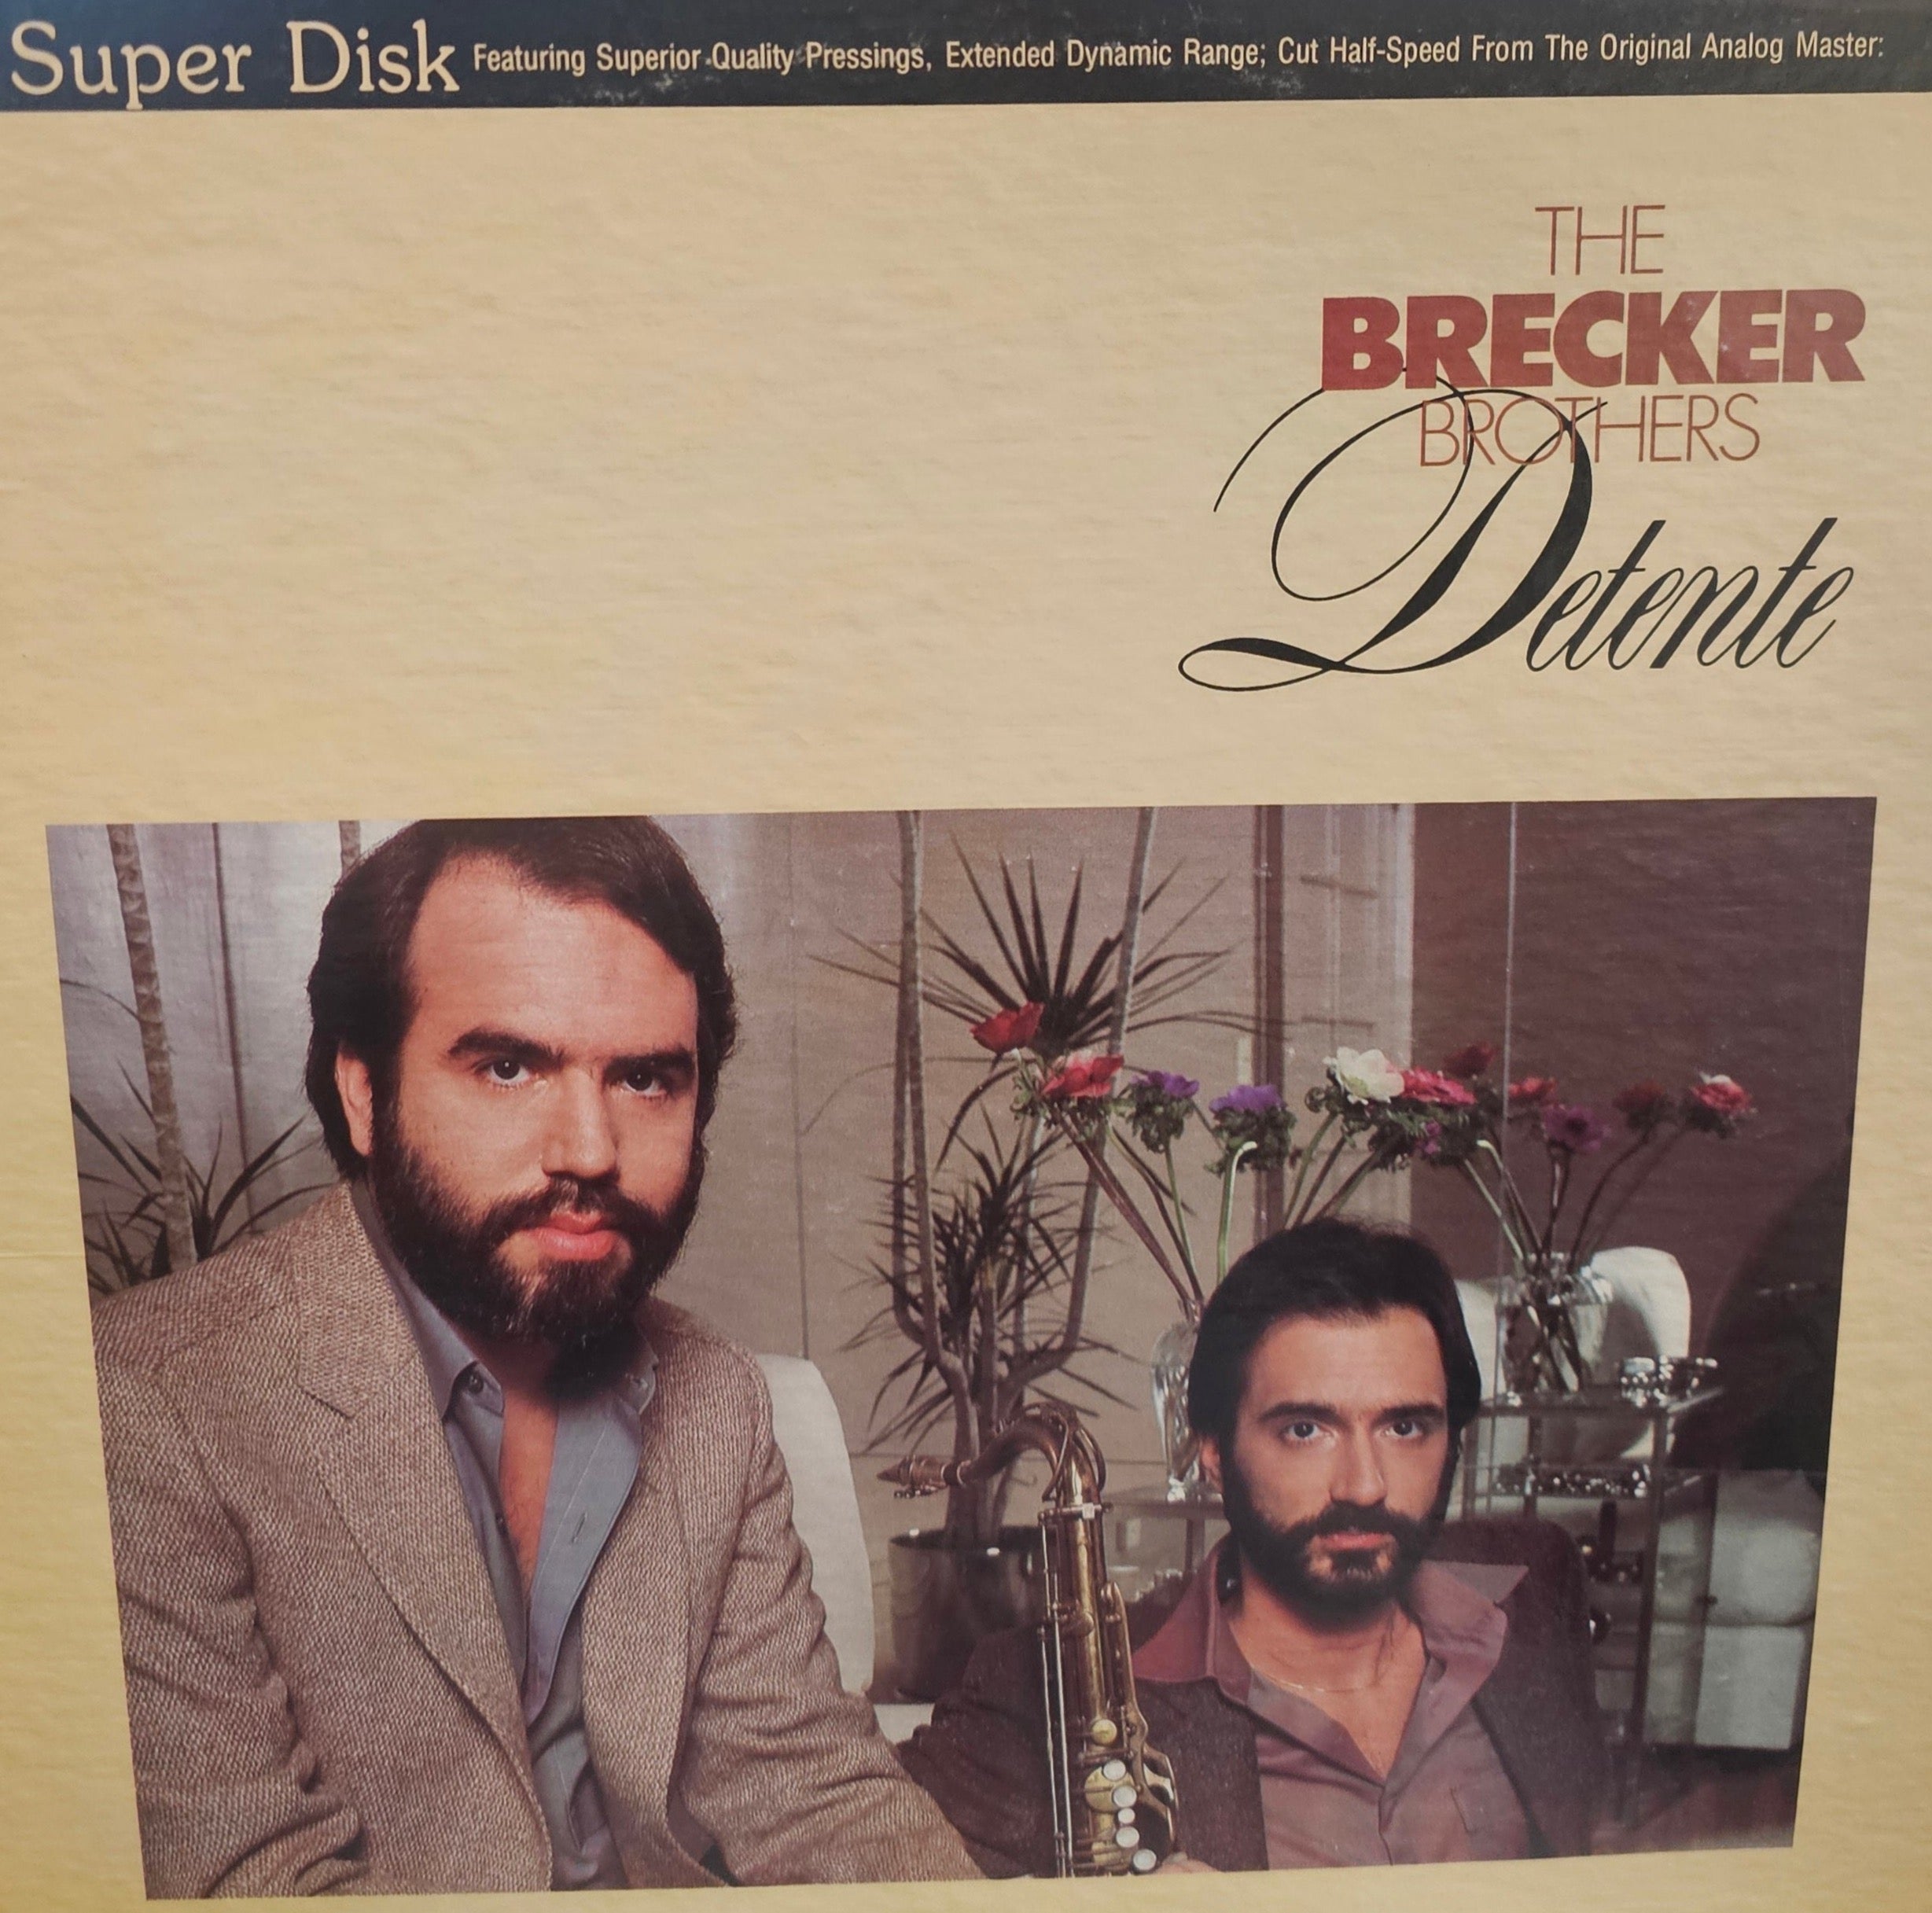 Brecker Brothers- Detente (Super Disk)